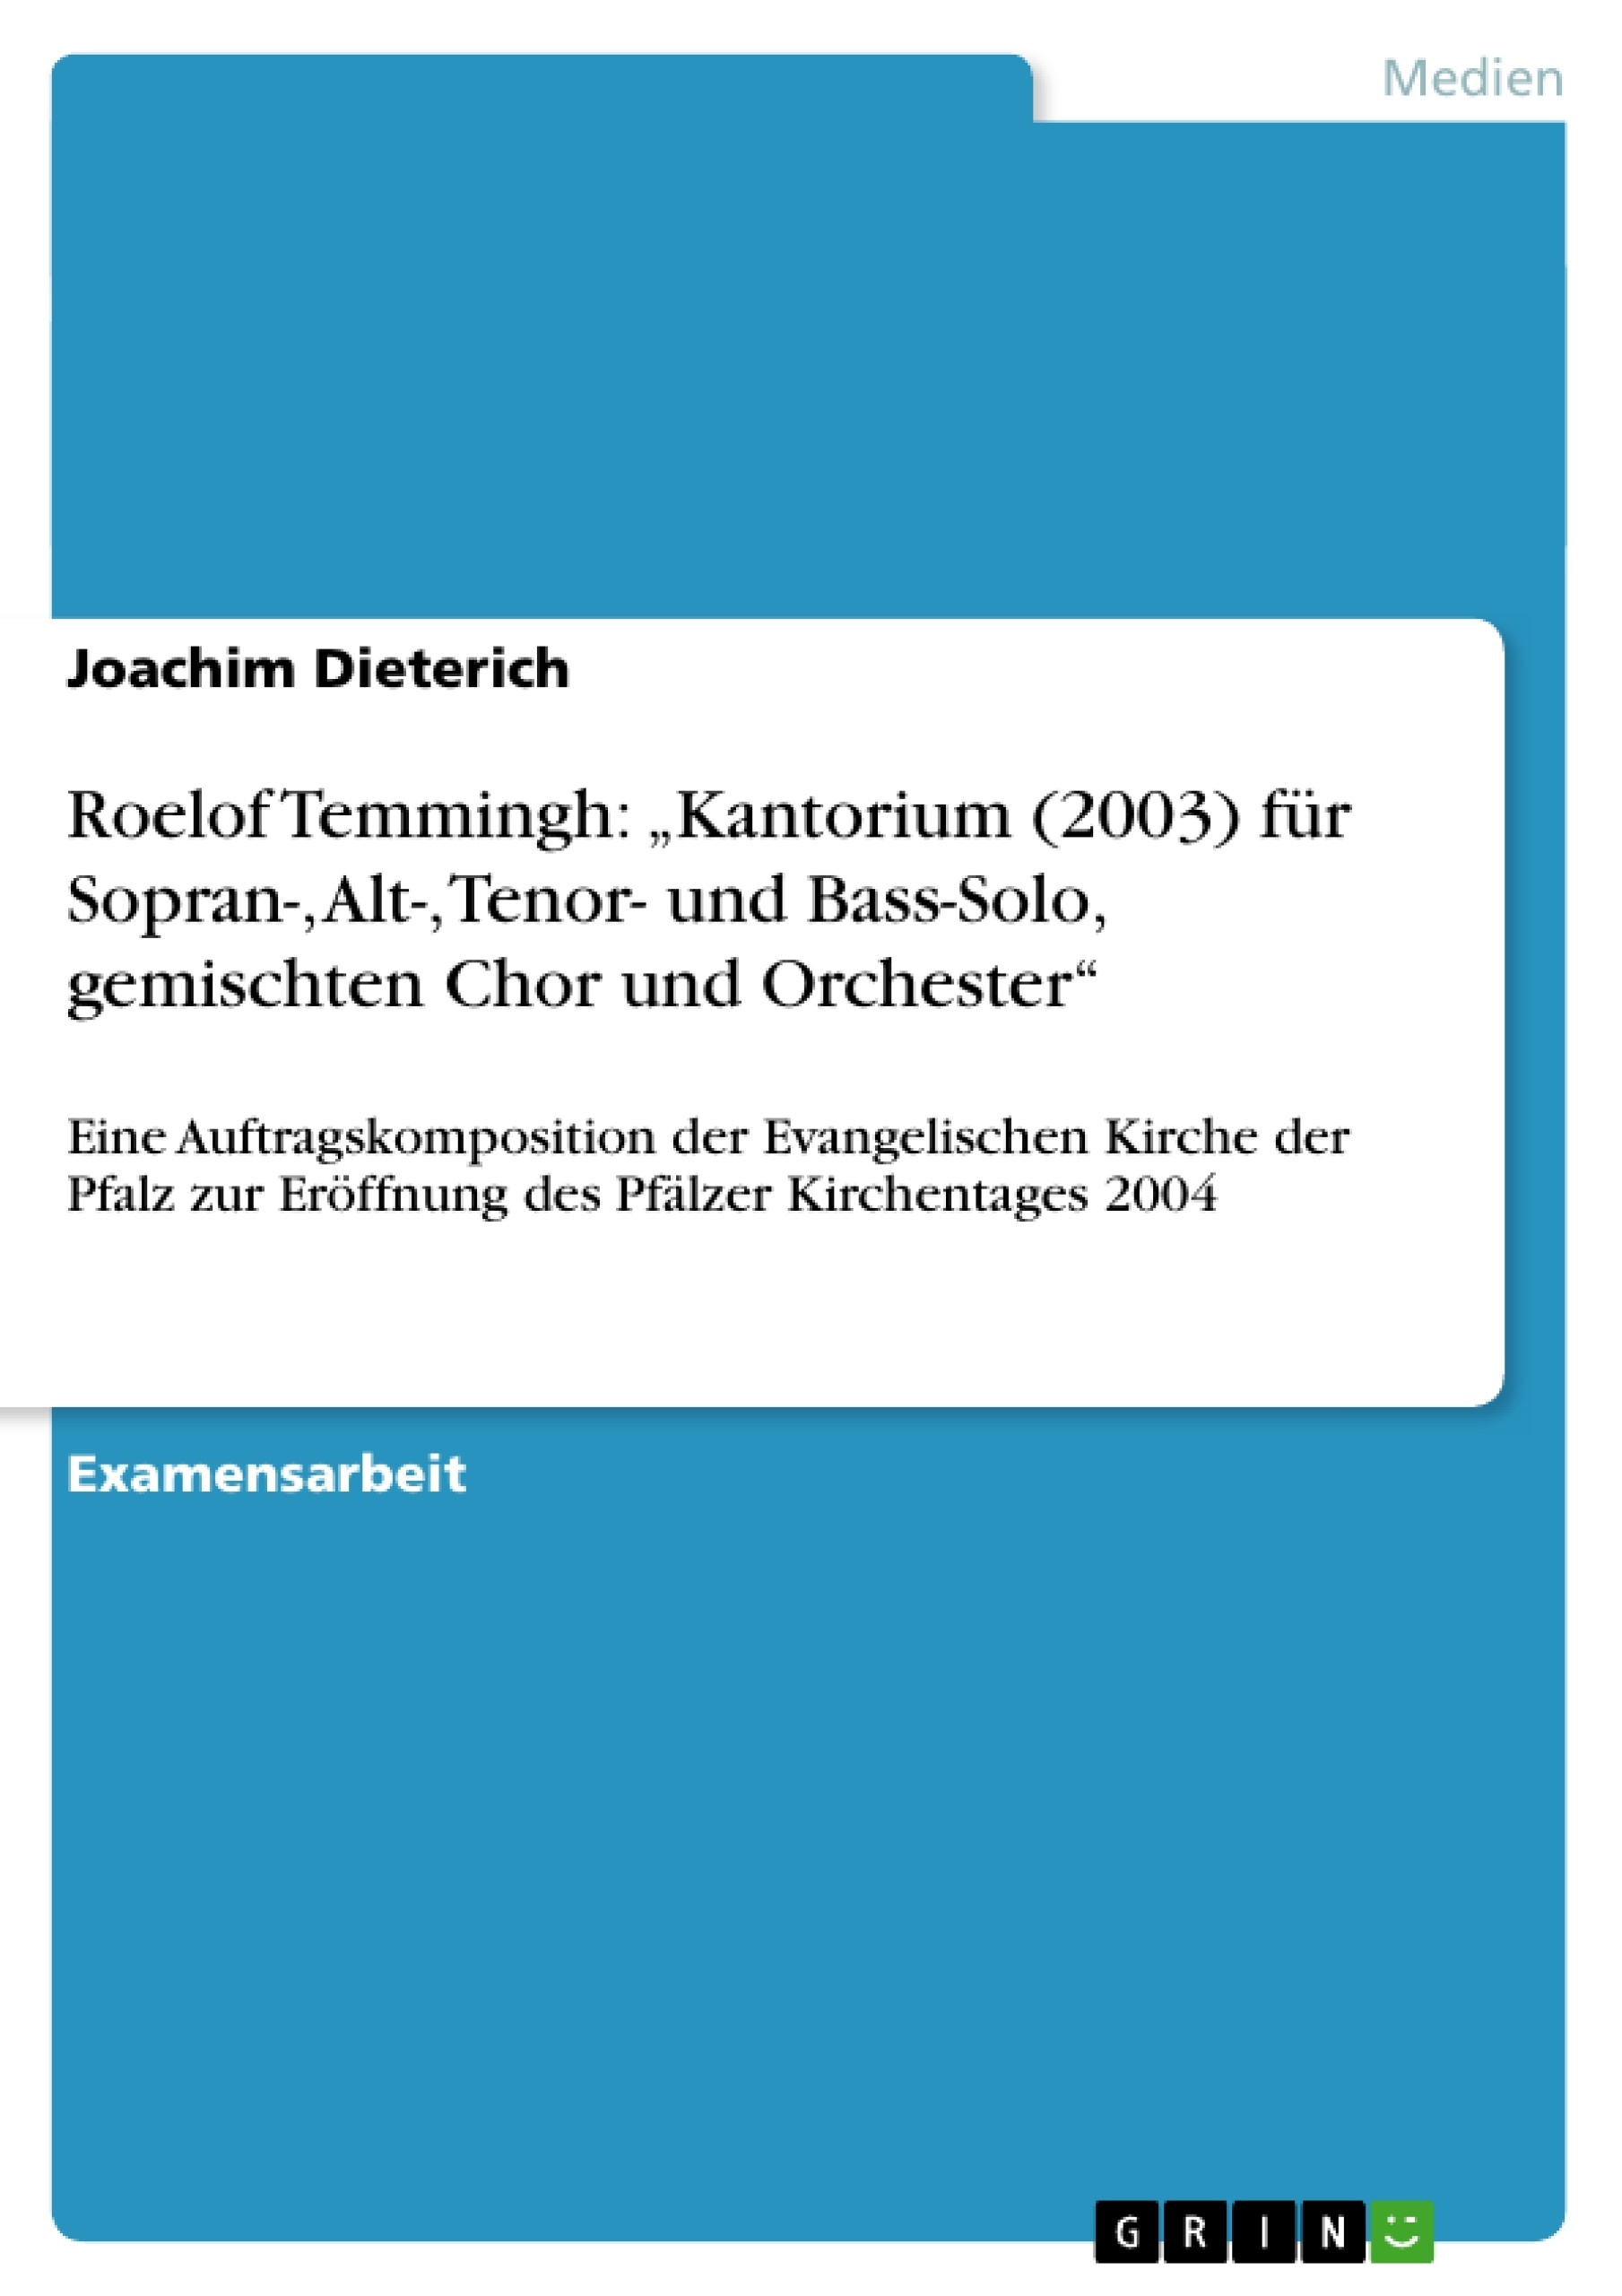 Title: Roelof Temmingh: „Kantorium (2003) für Sopran-, Alt-, Tenor- und Bass-Solo, gemischten Chor und Orchester“